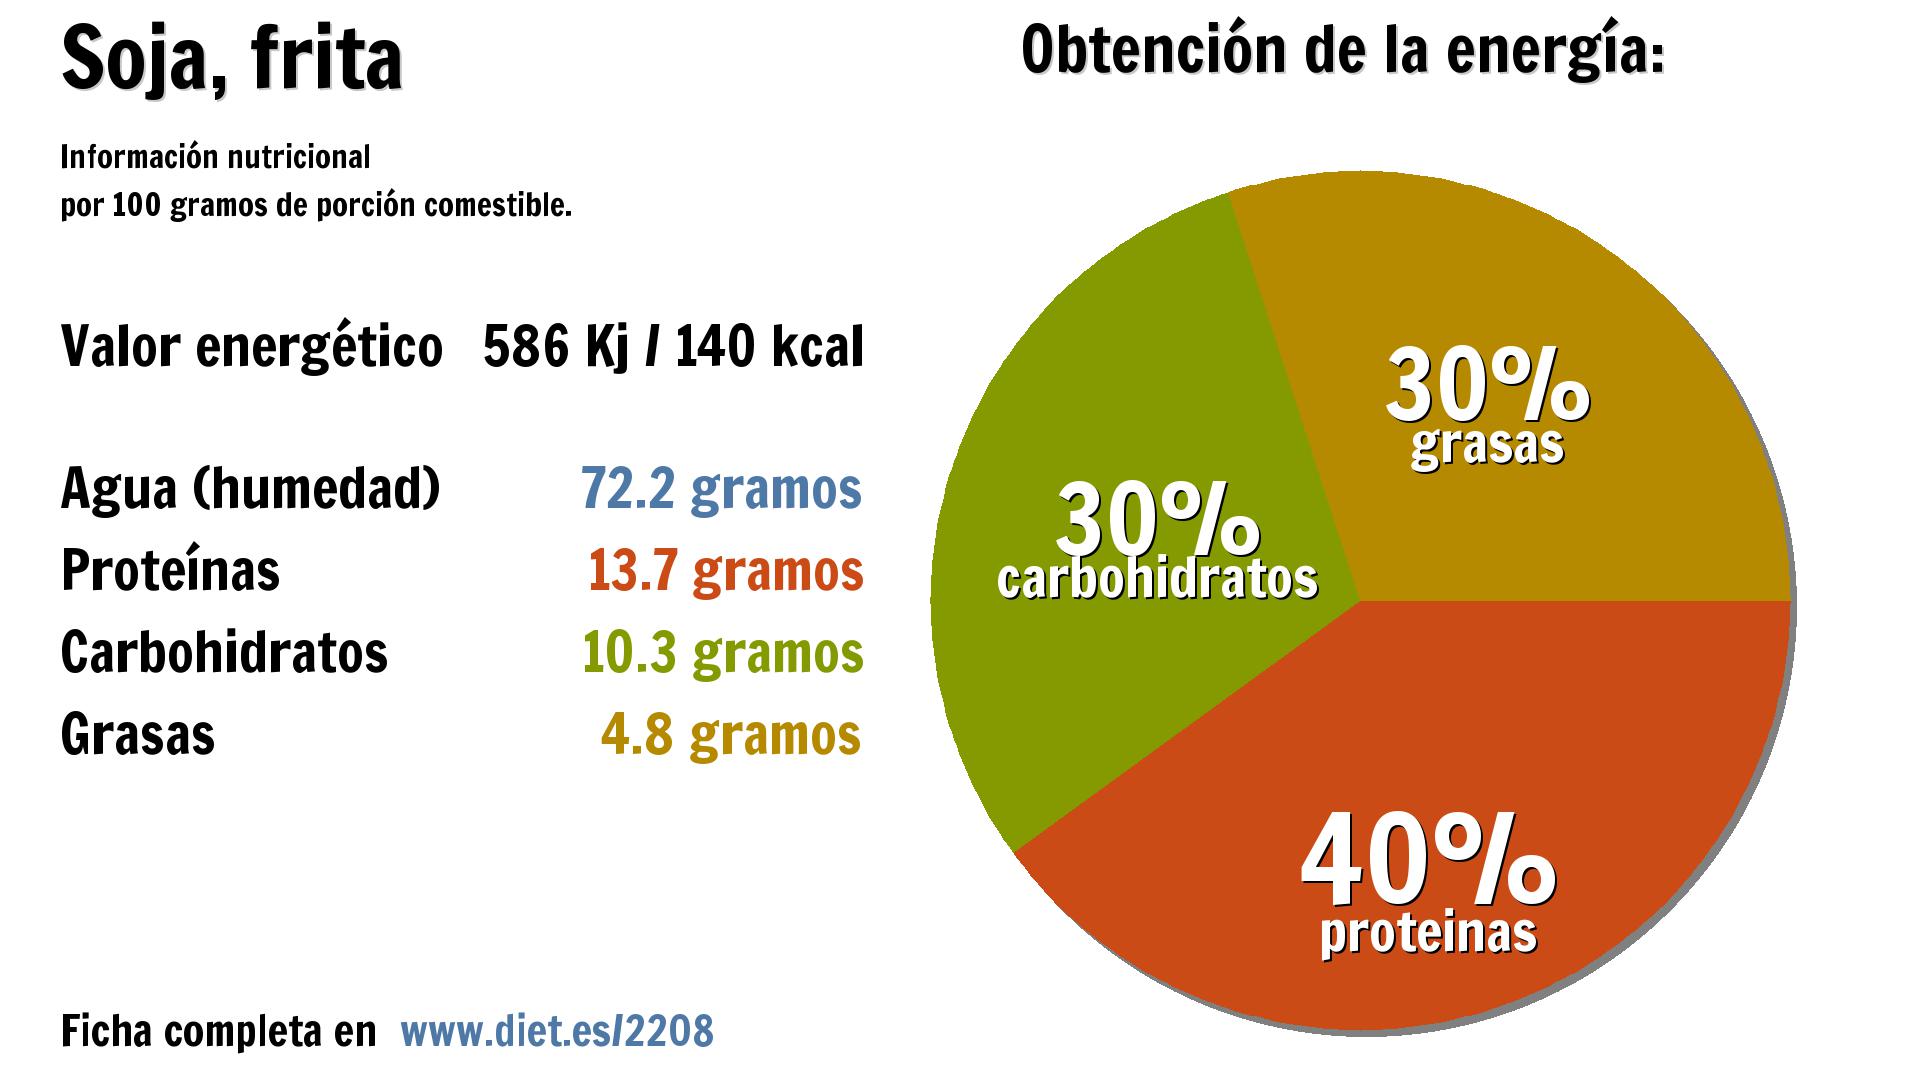 Soja, frita: energía 586 Kj, agua 72 g., proteínas 14 g., carbohidratos 10 g. y grasas 5 g.